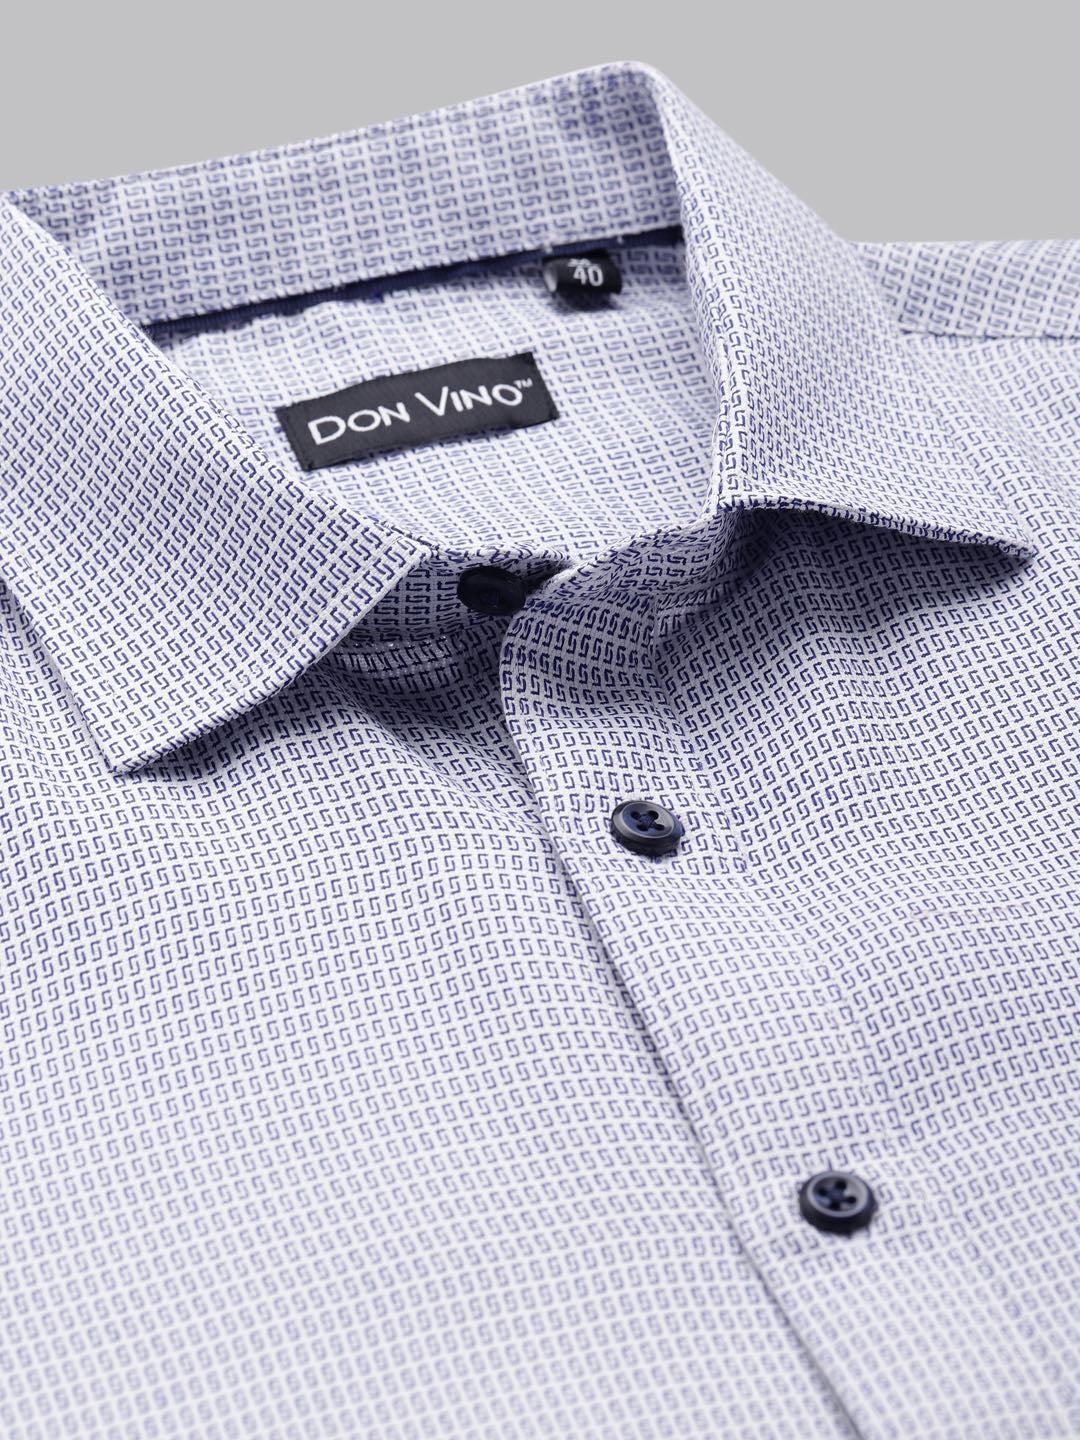 Don Vino Men's Light Blue Dobby Slim Fit Formal Shirt